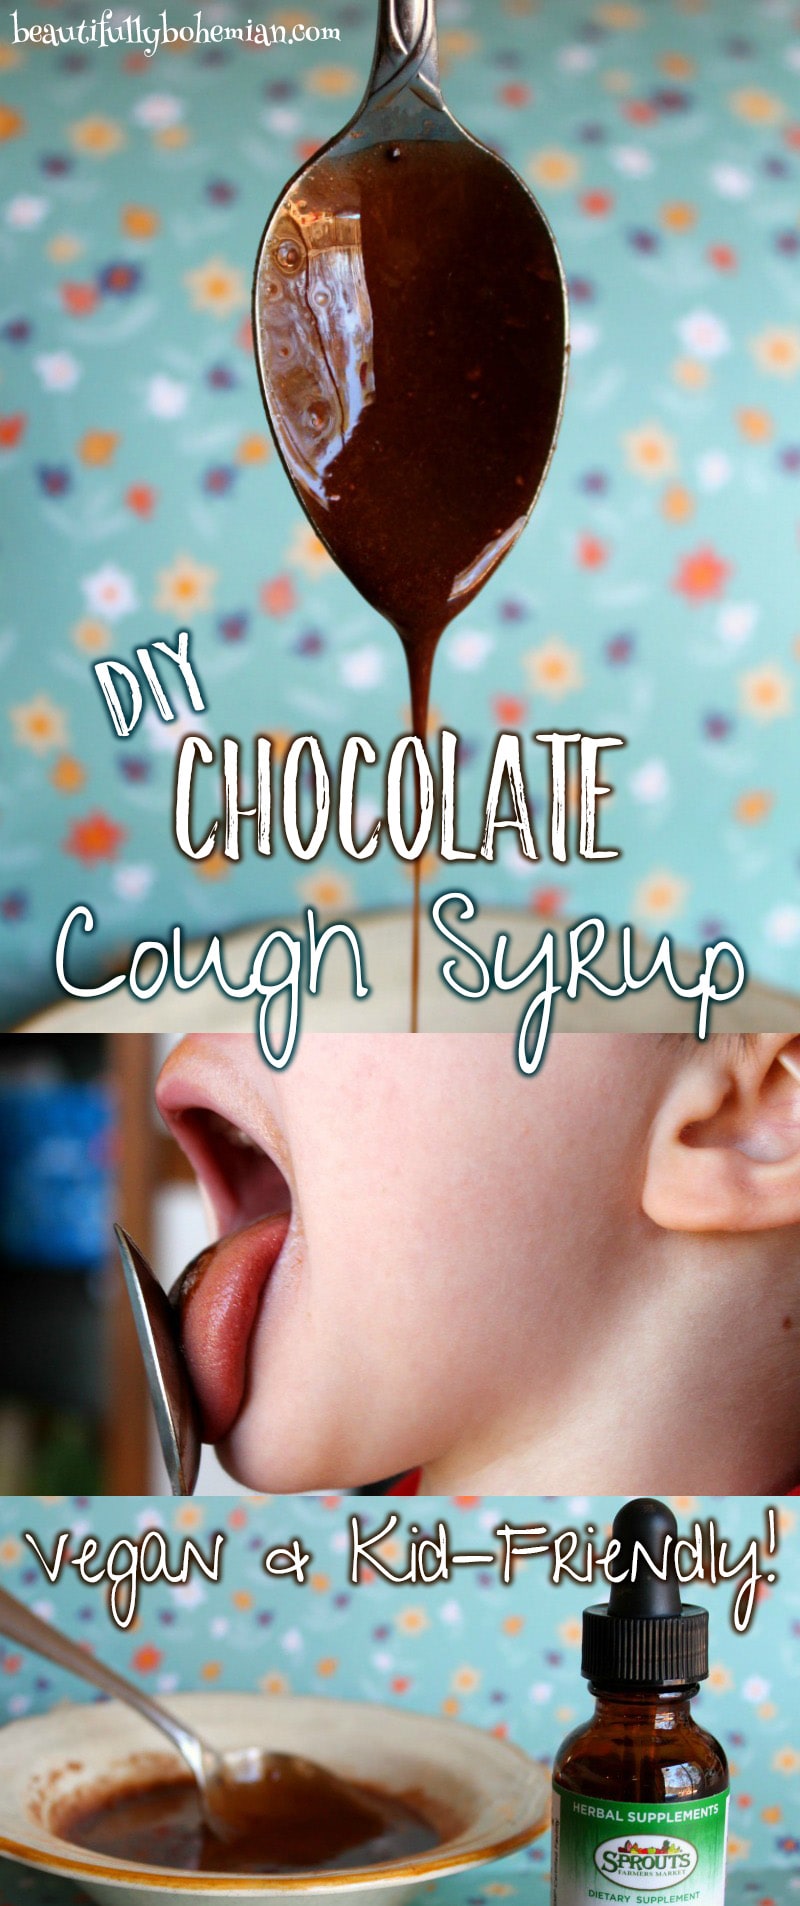 diy chocolate vegan cough syrup